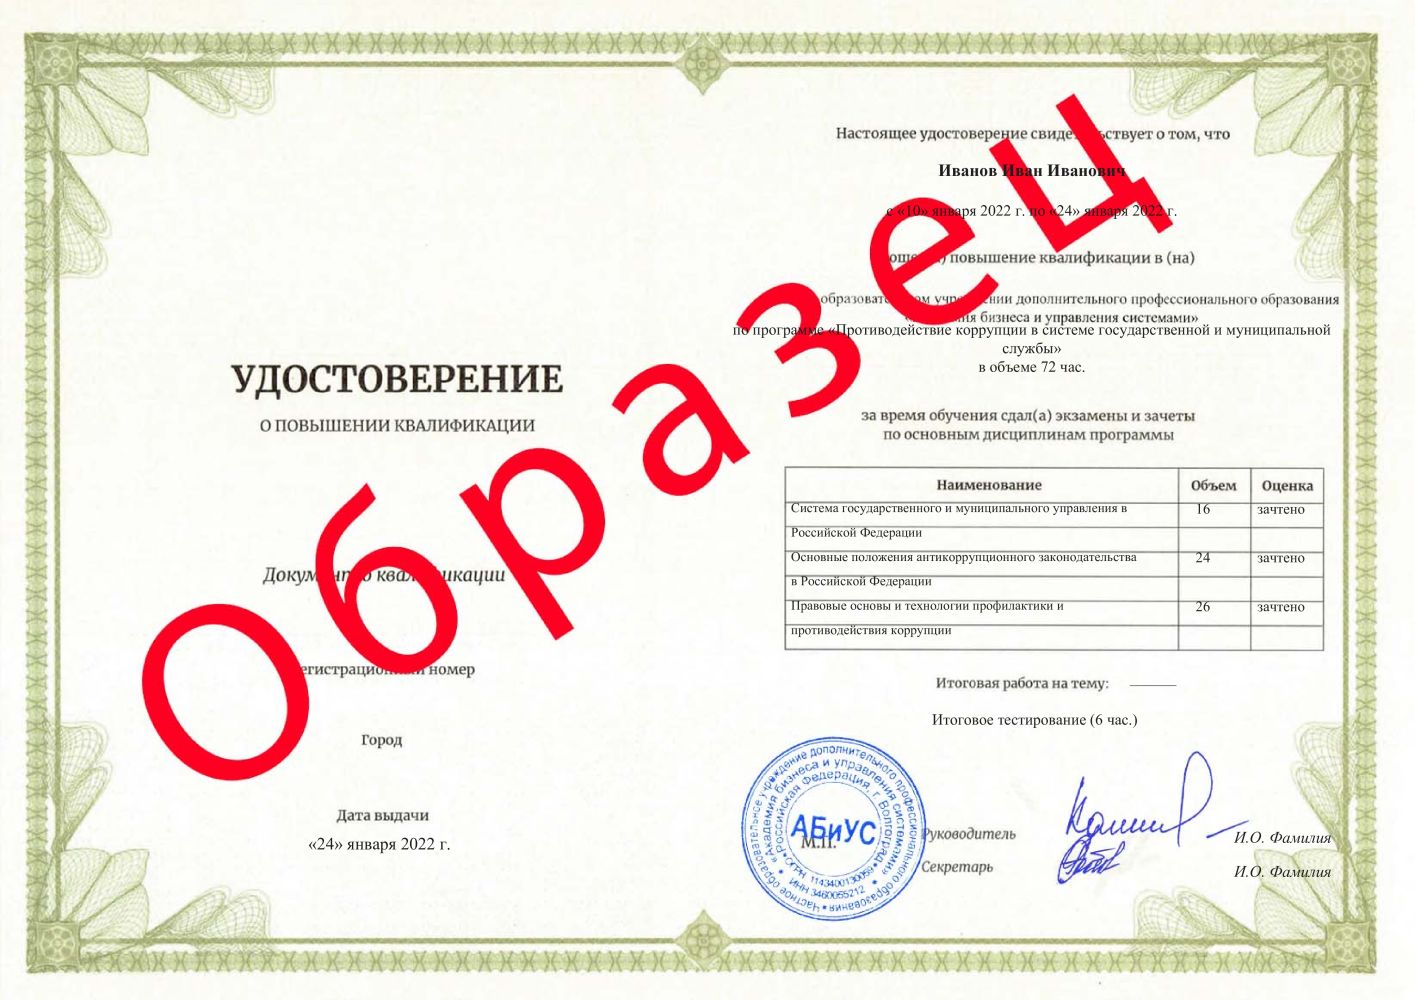 Удостоверение Противодействие коррупции в системе государственной и муниципальной службы 72 часа 3867 руб.